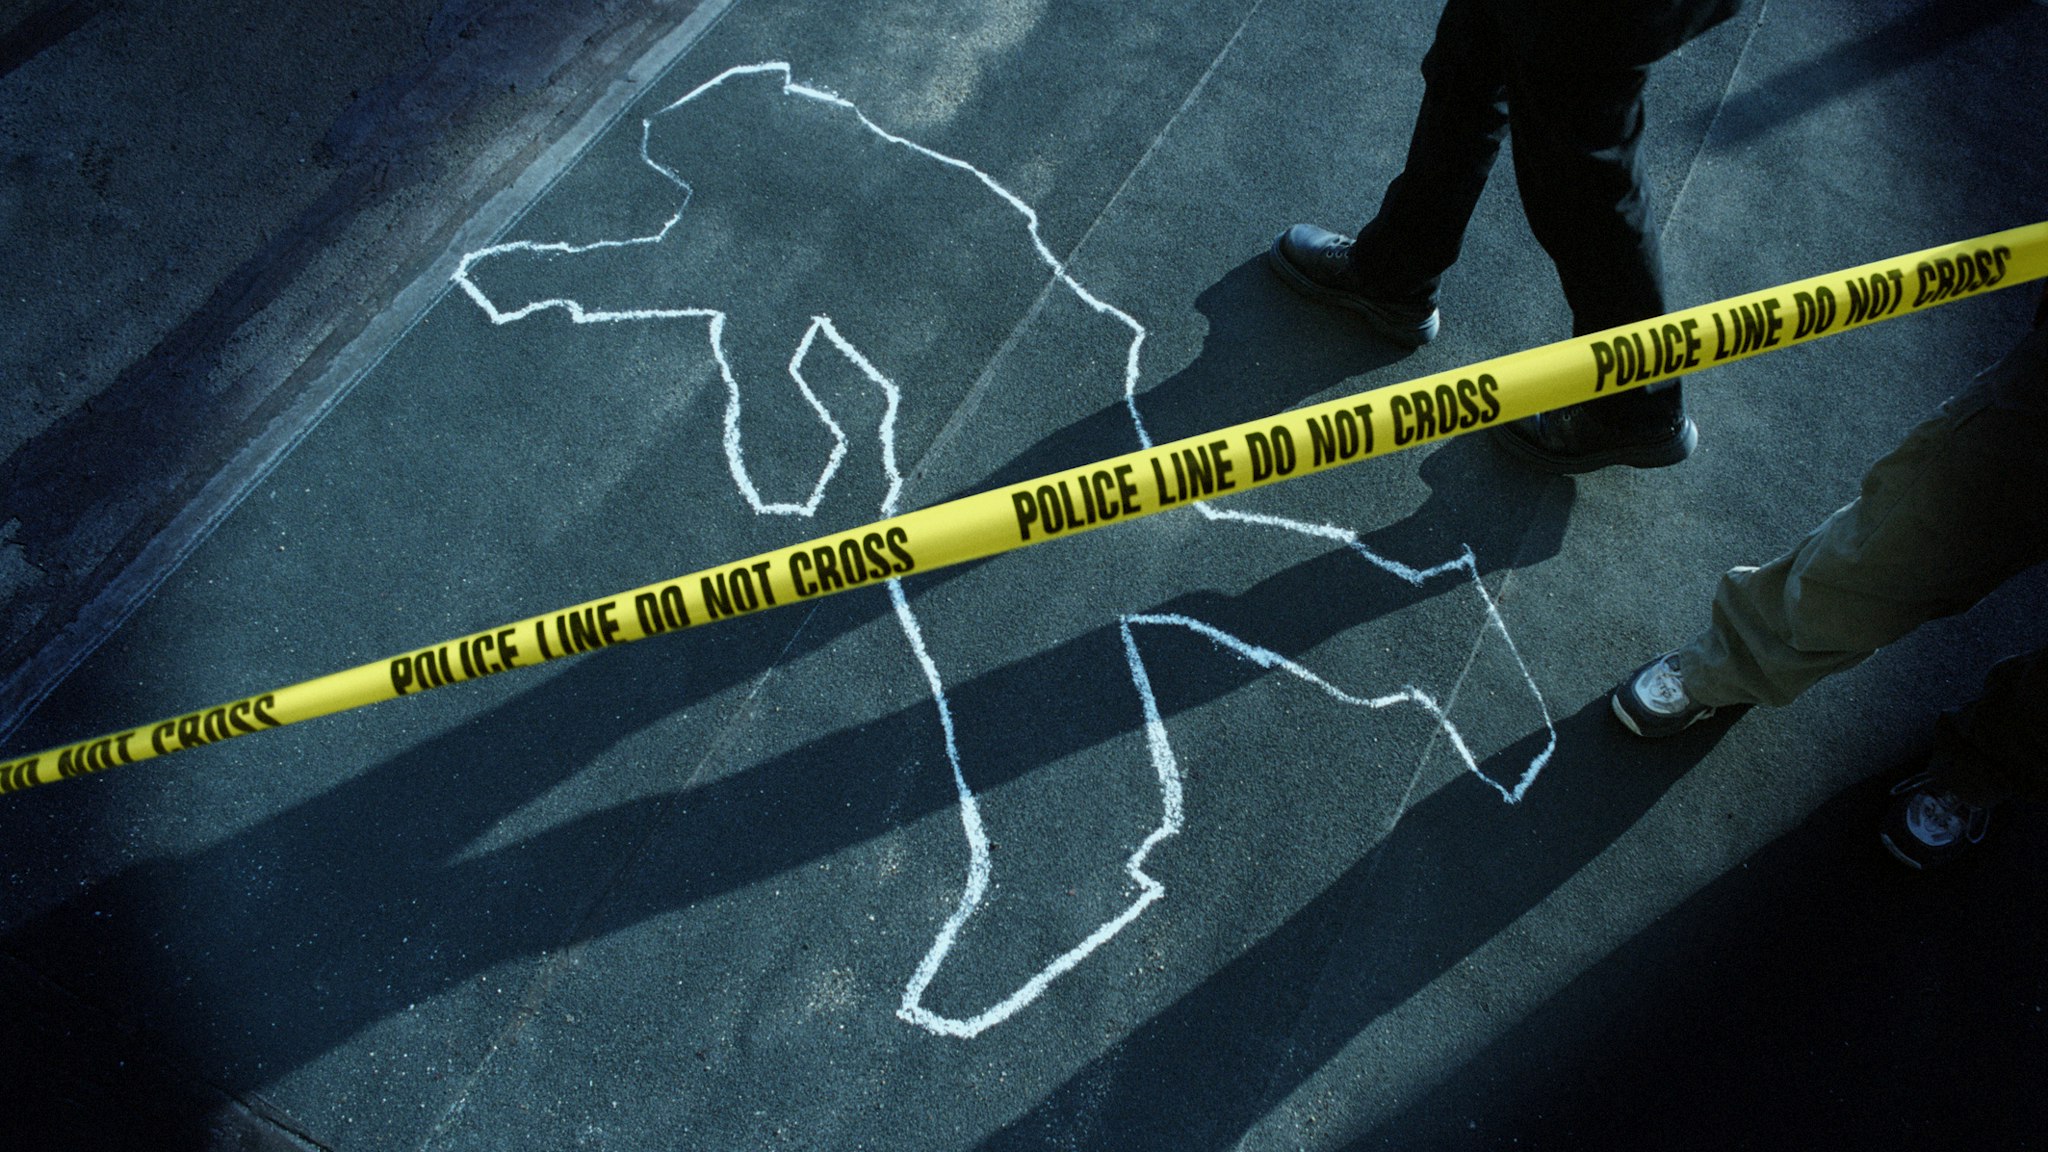 Chalk Outline at Police Crime Scene - stock photo